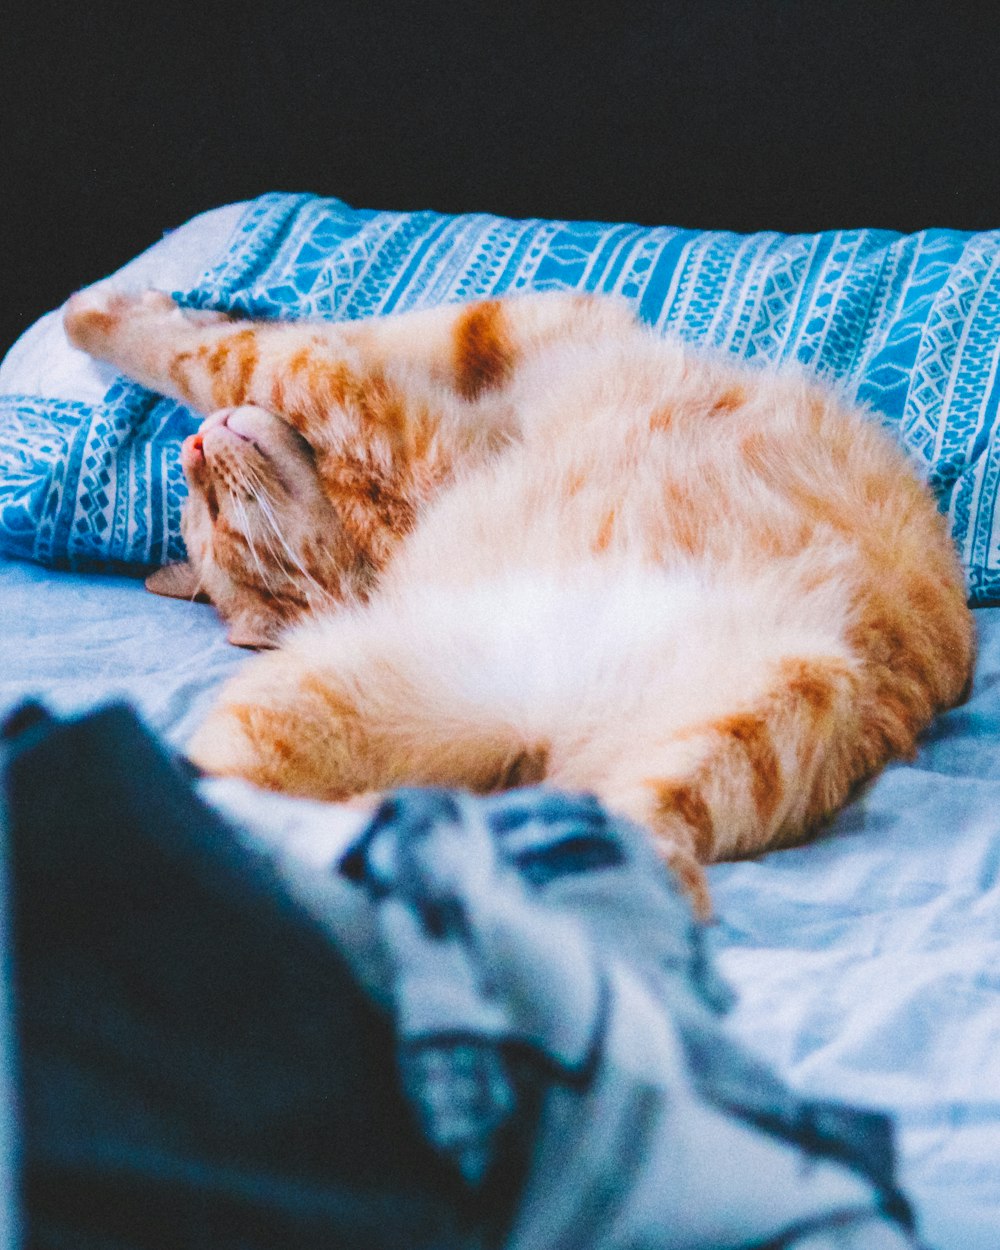 gato tabby laranja deitado no tecido azul e branco